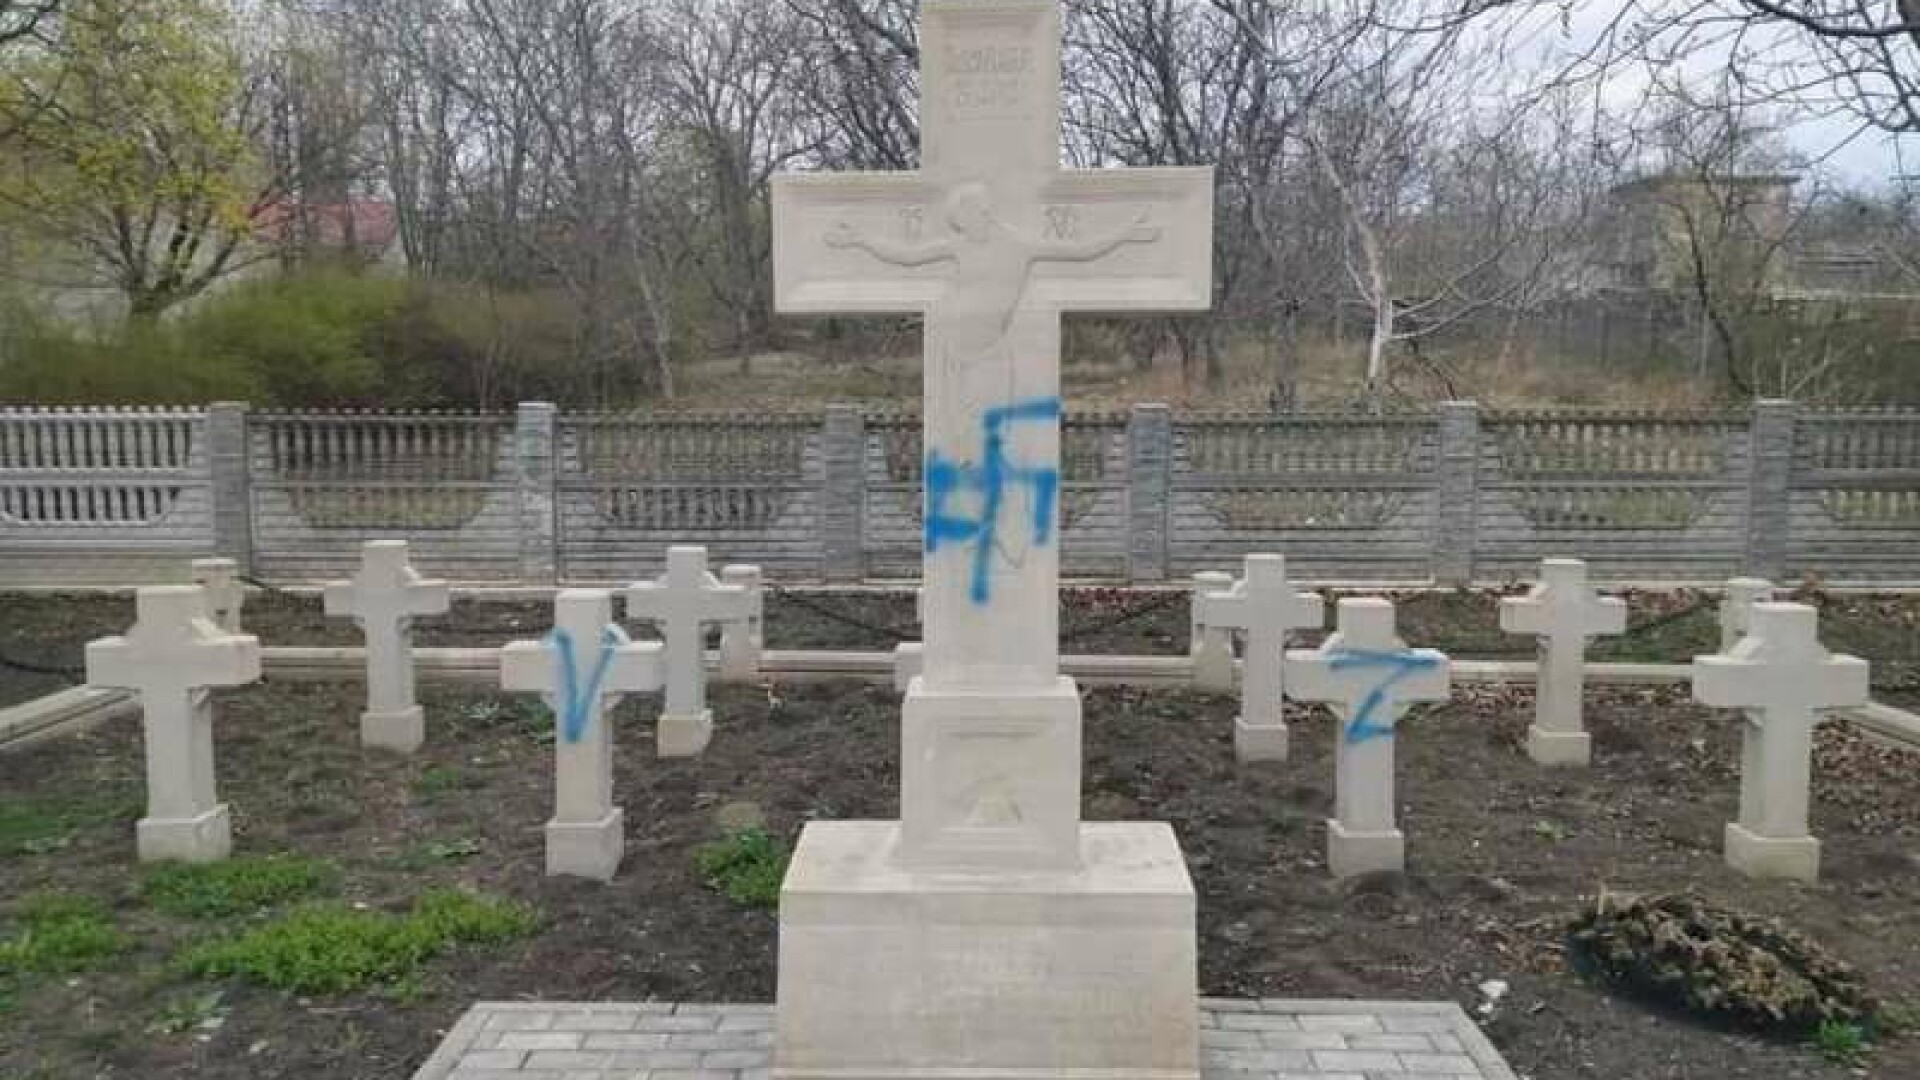 Crucile soldaților români dintr-un cimitir din Moldova, vandalizate cu însemne naziste și litera Z. ”Act barbar și criminal”